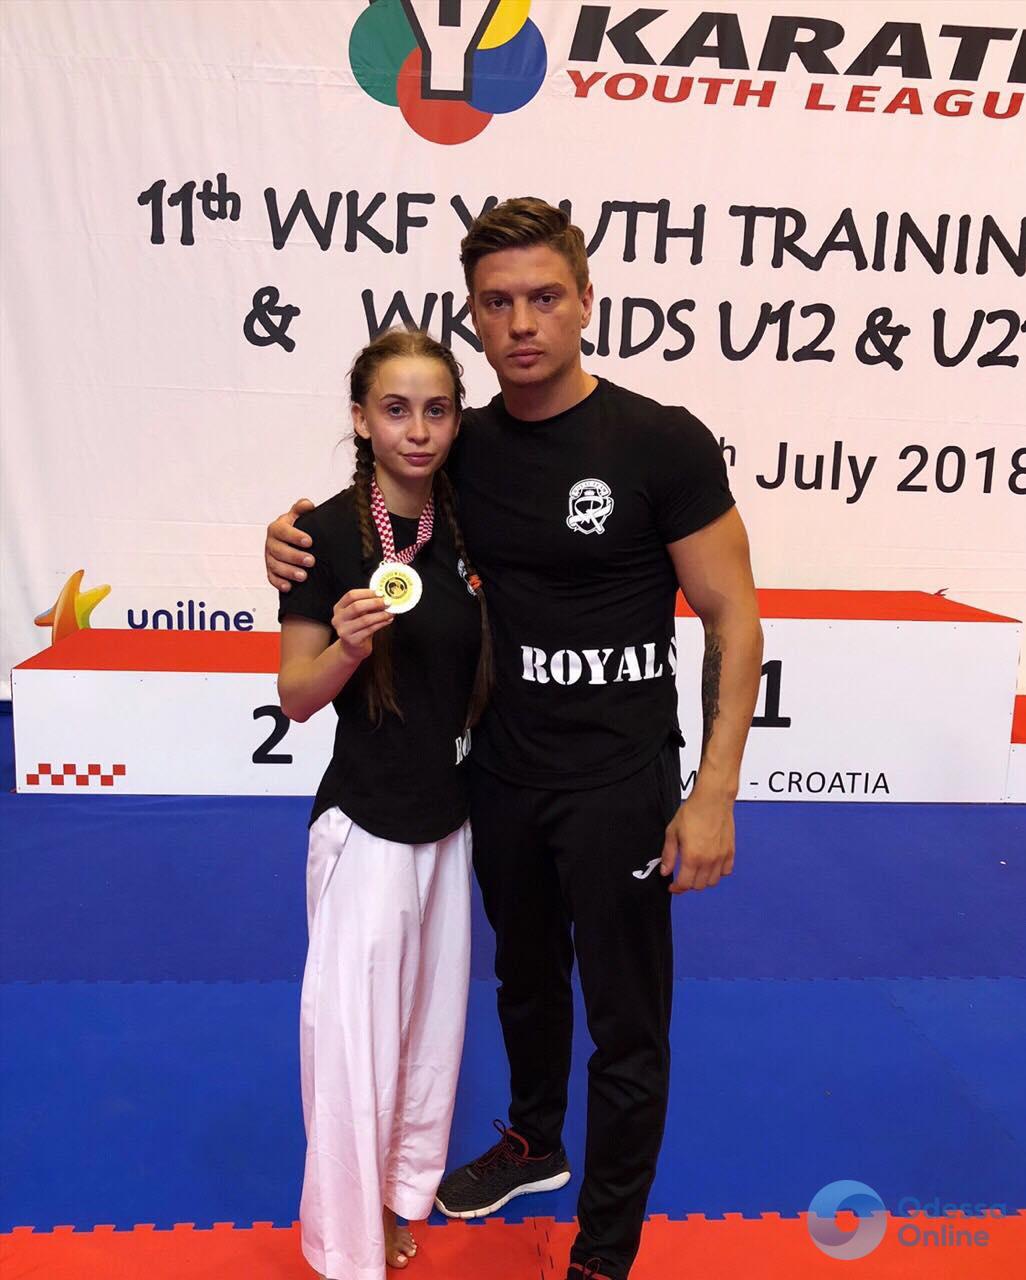 Одесситы успешно выступили в престижном международном турнире по каратэ в Хорватии